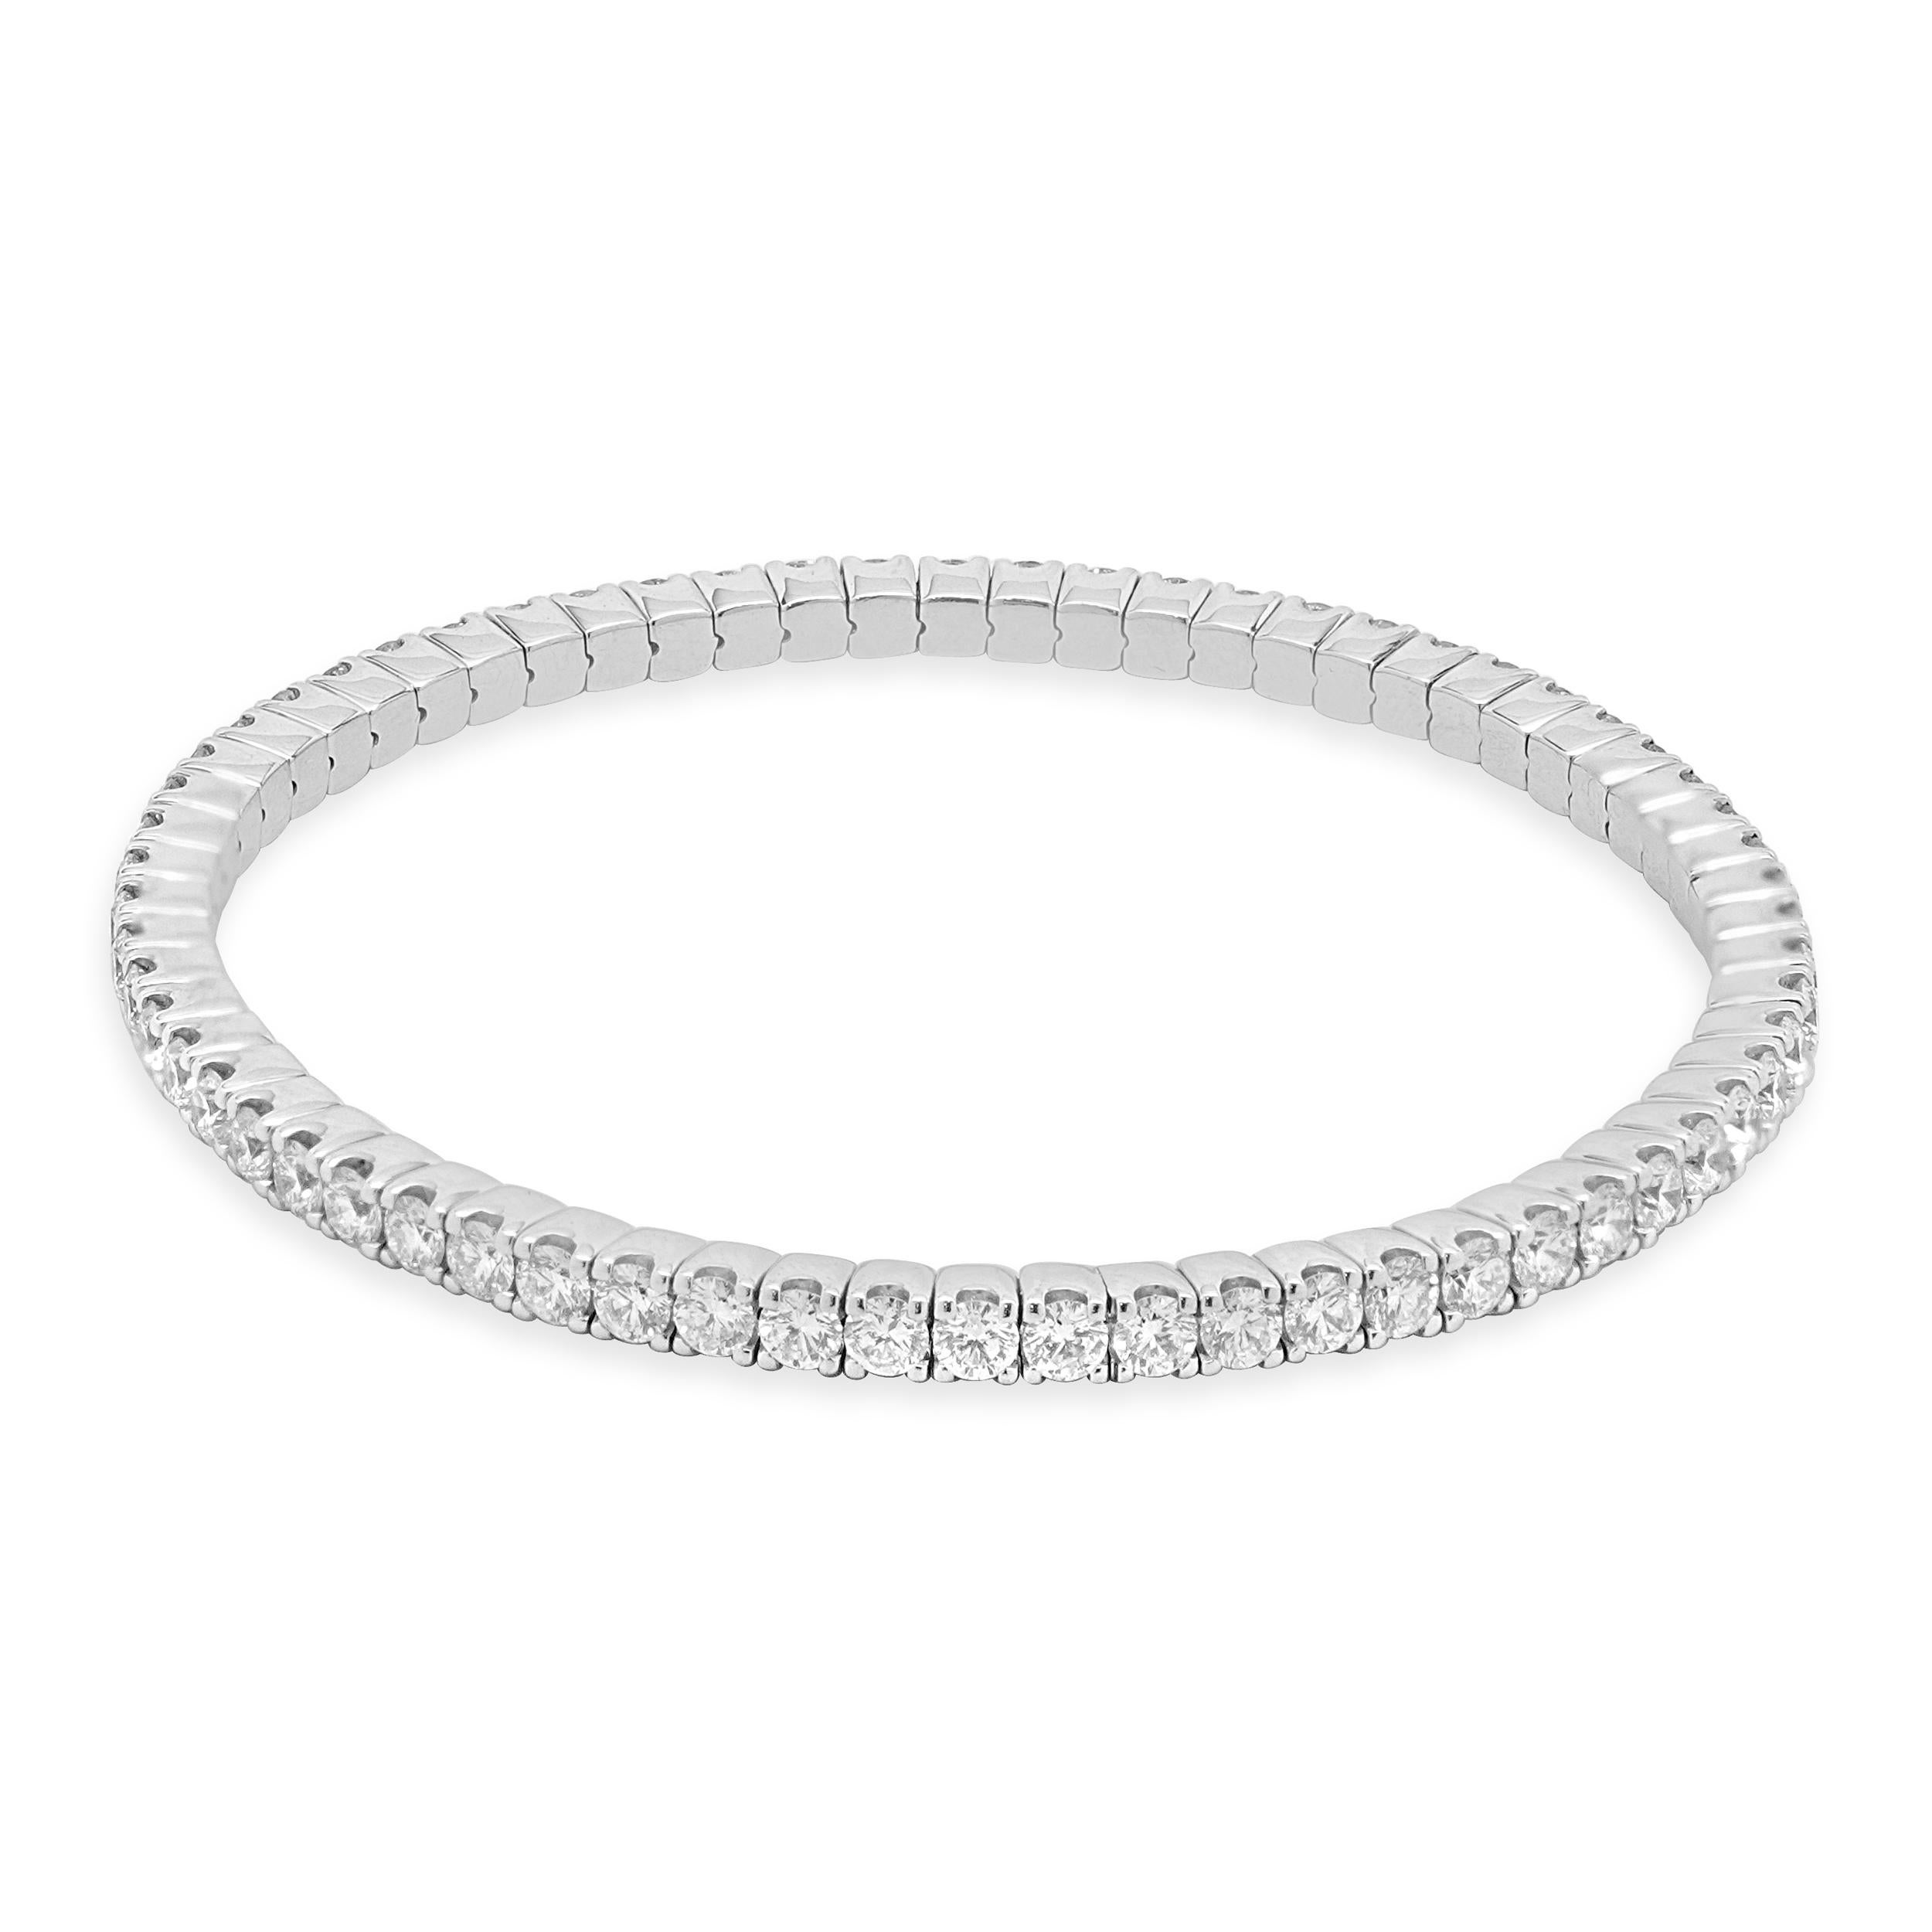 Designer : Crivelli
Matériau : Or blanc 18K
Diamant : 64 diamants ronds de taille brillant = 5,80cttw
Couleur : G
Clarté : VS1-2
Poids : 16,30 grammes
